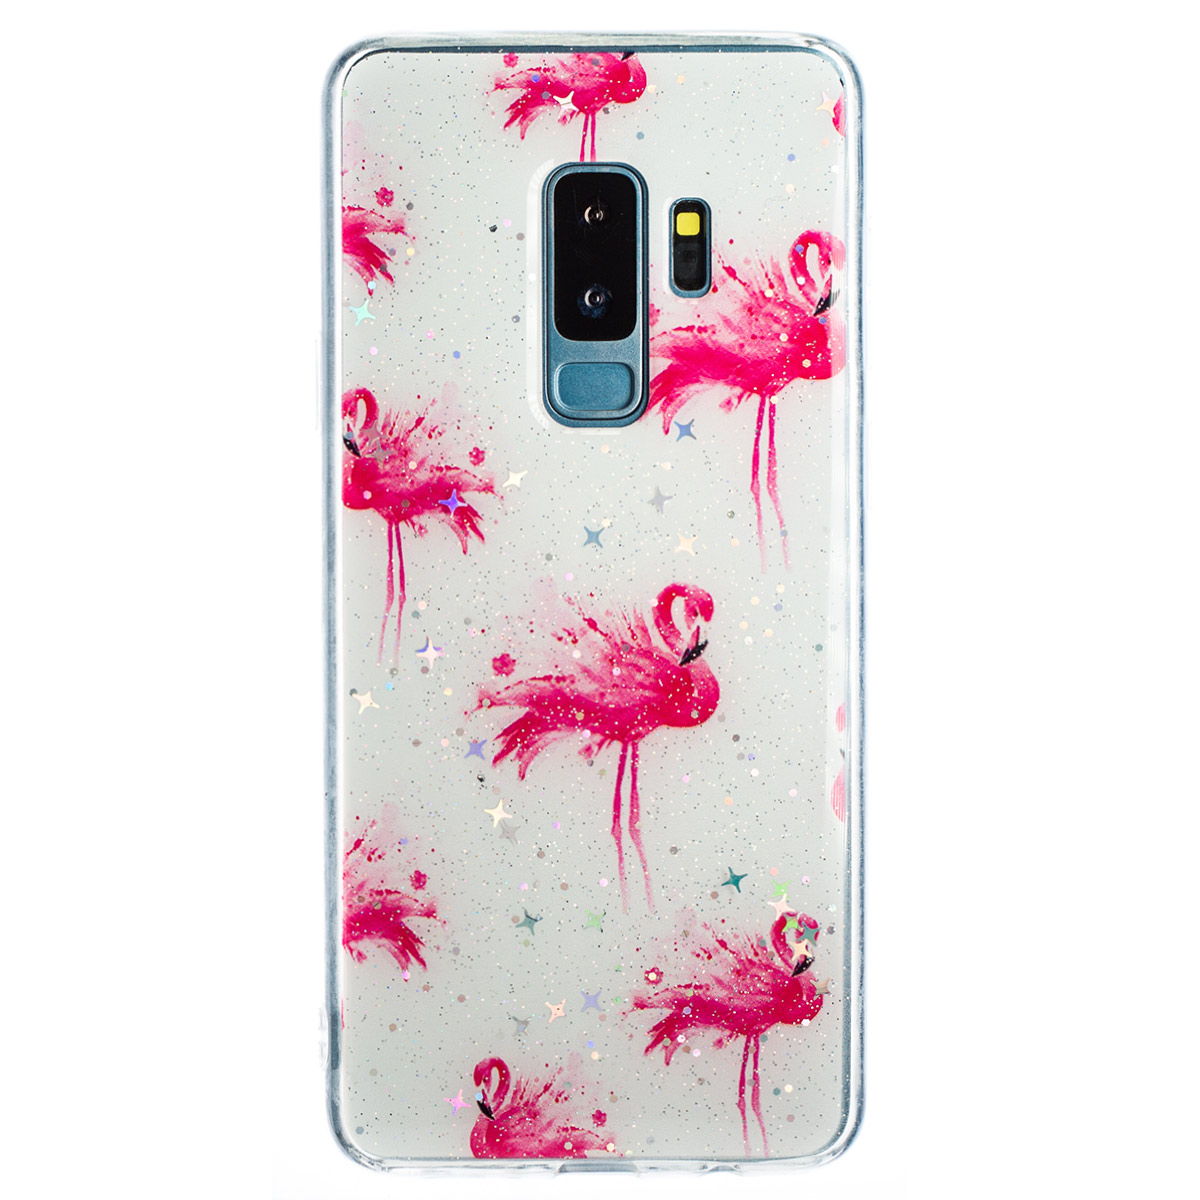 Husa Fashion Samsung Galaxy S9 Plus, Flamingo thumb